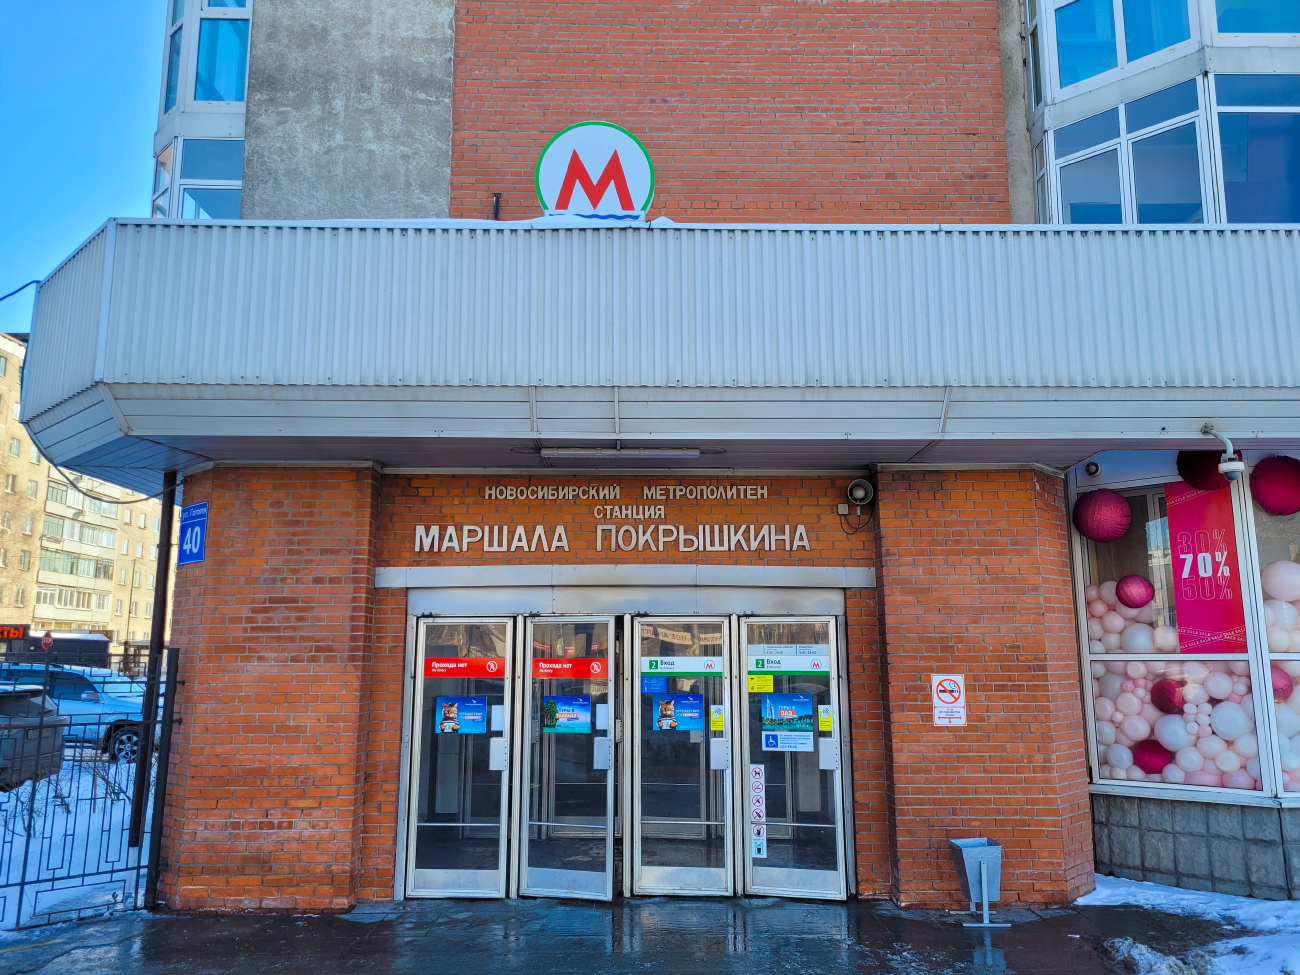 Новосибирск — Дзержинская линия — станция "Маршала Покрышкина"